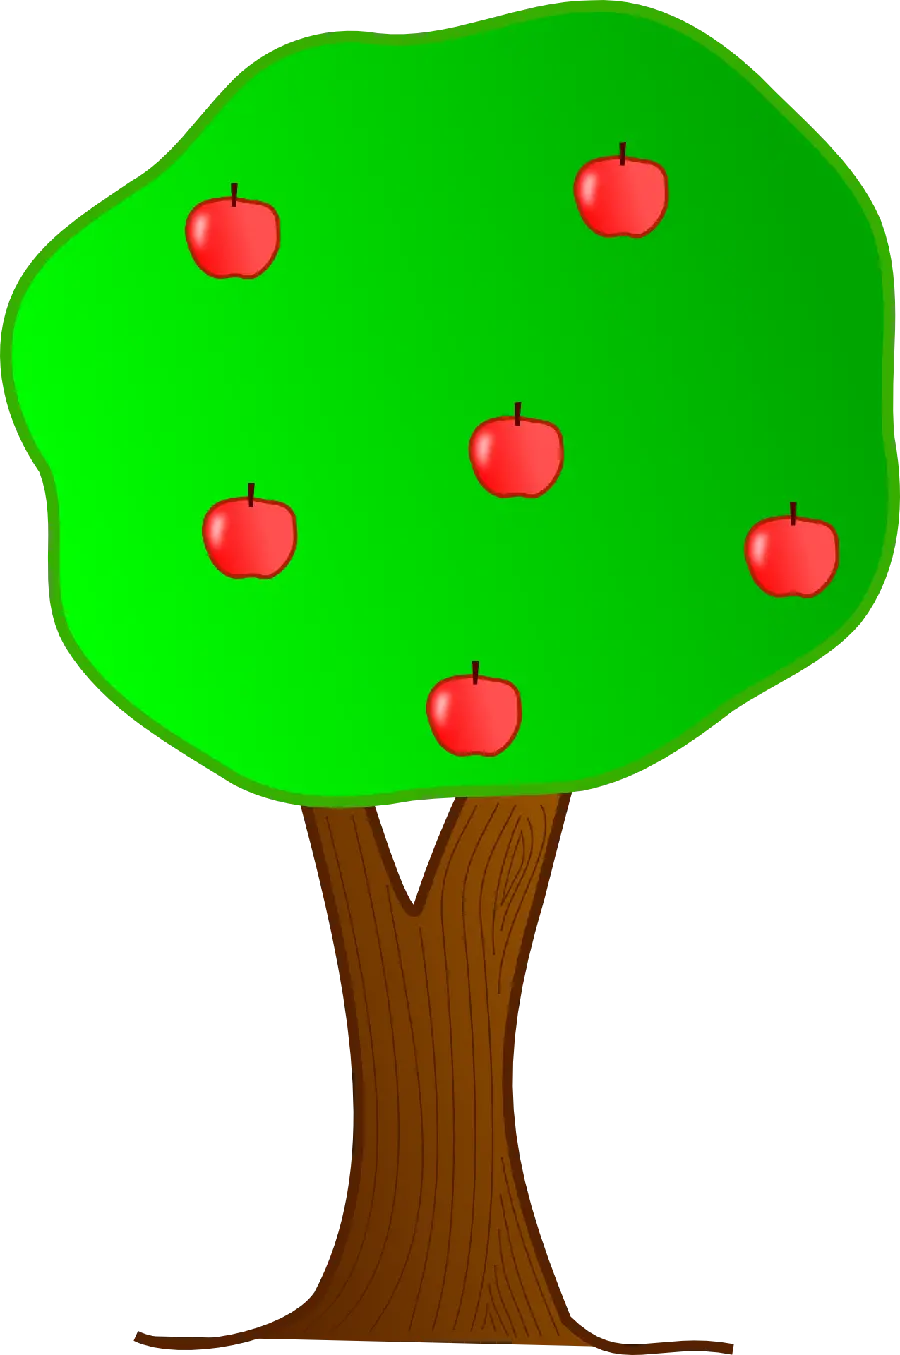 تصویر ساده نقاشی کامپیوتری گرافیکی درخت سیب 